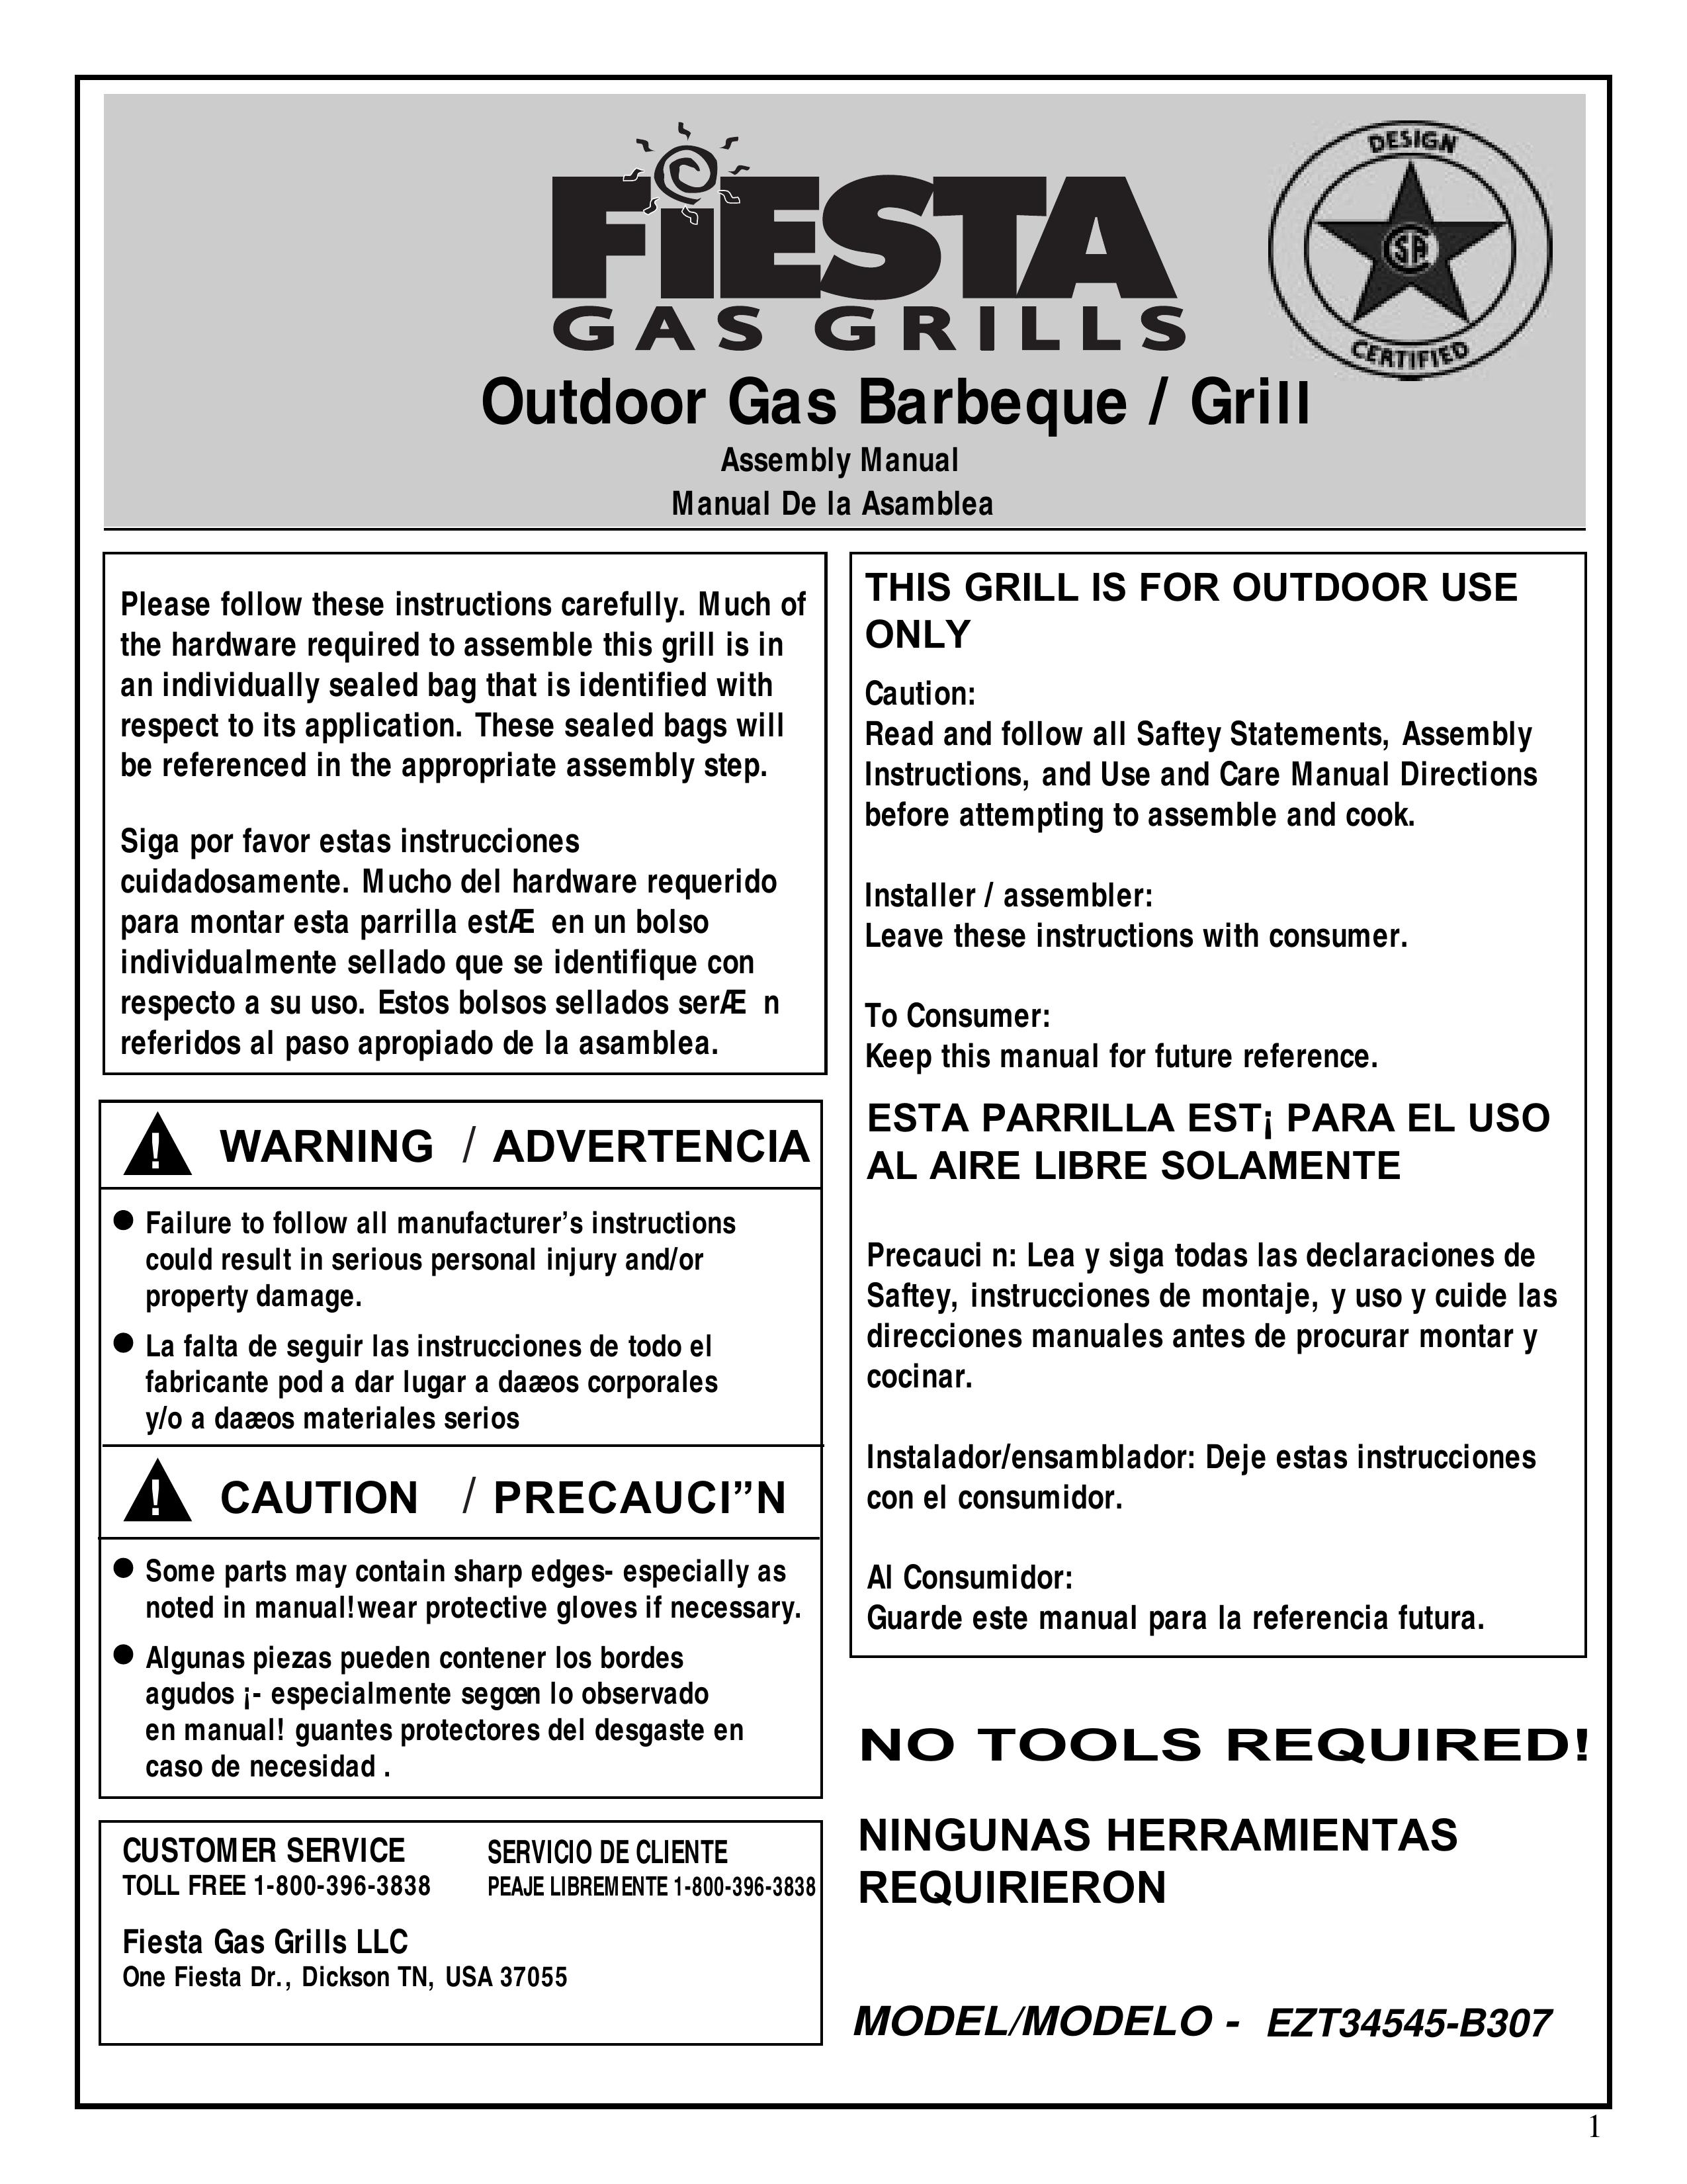 Fiesta EZT34545 B307 Gas Grill User Manual